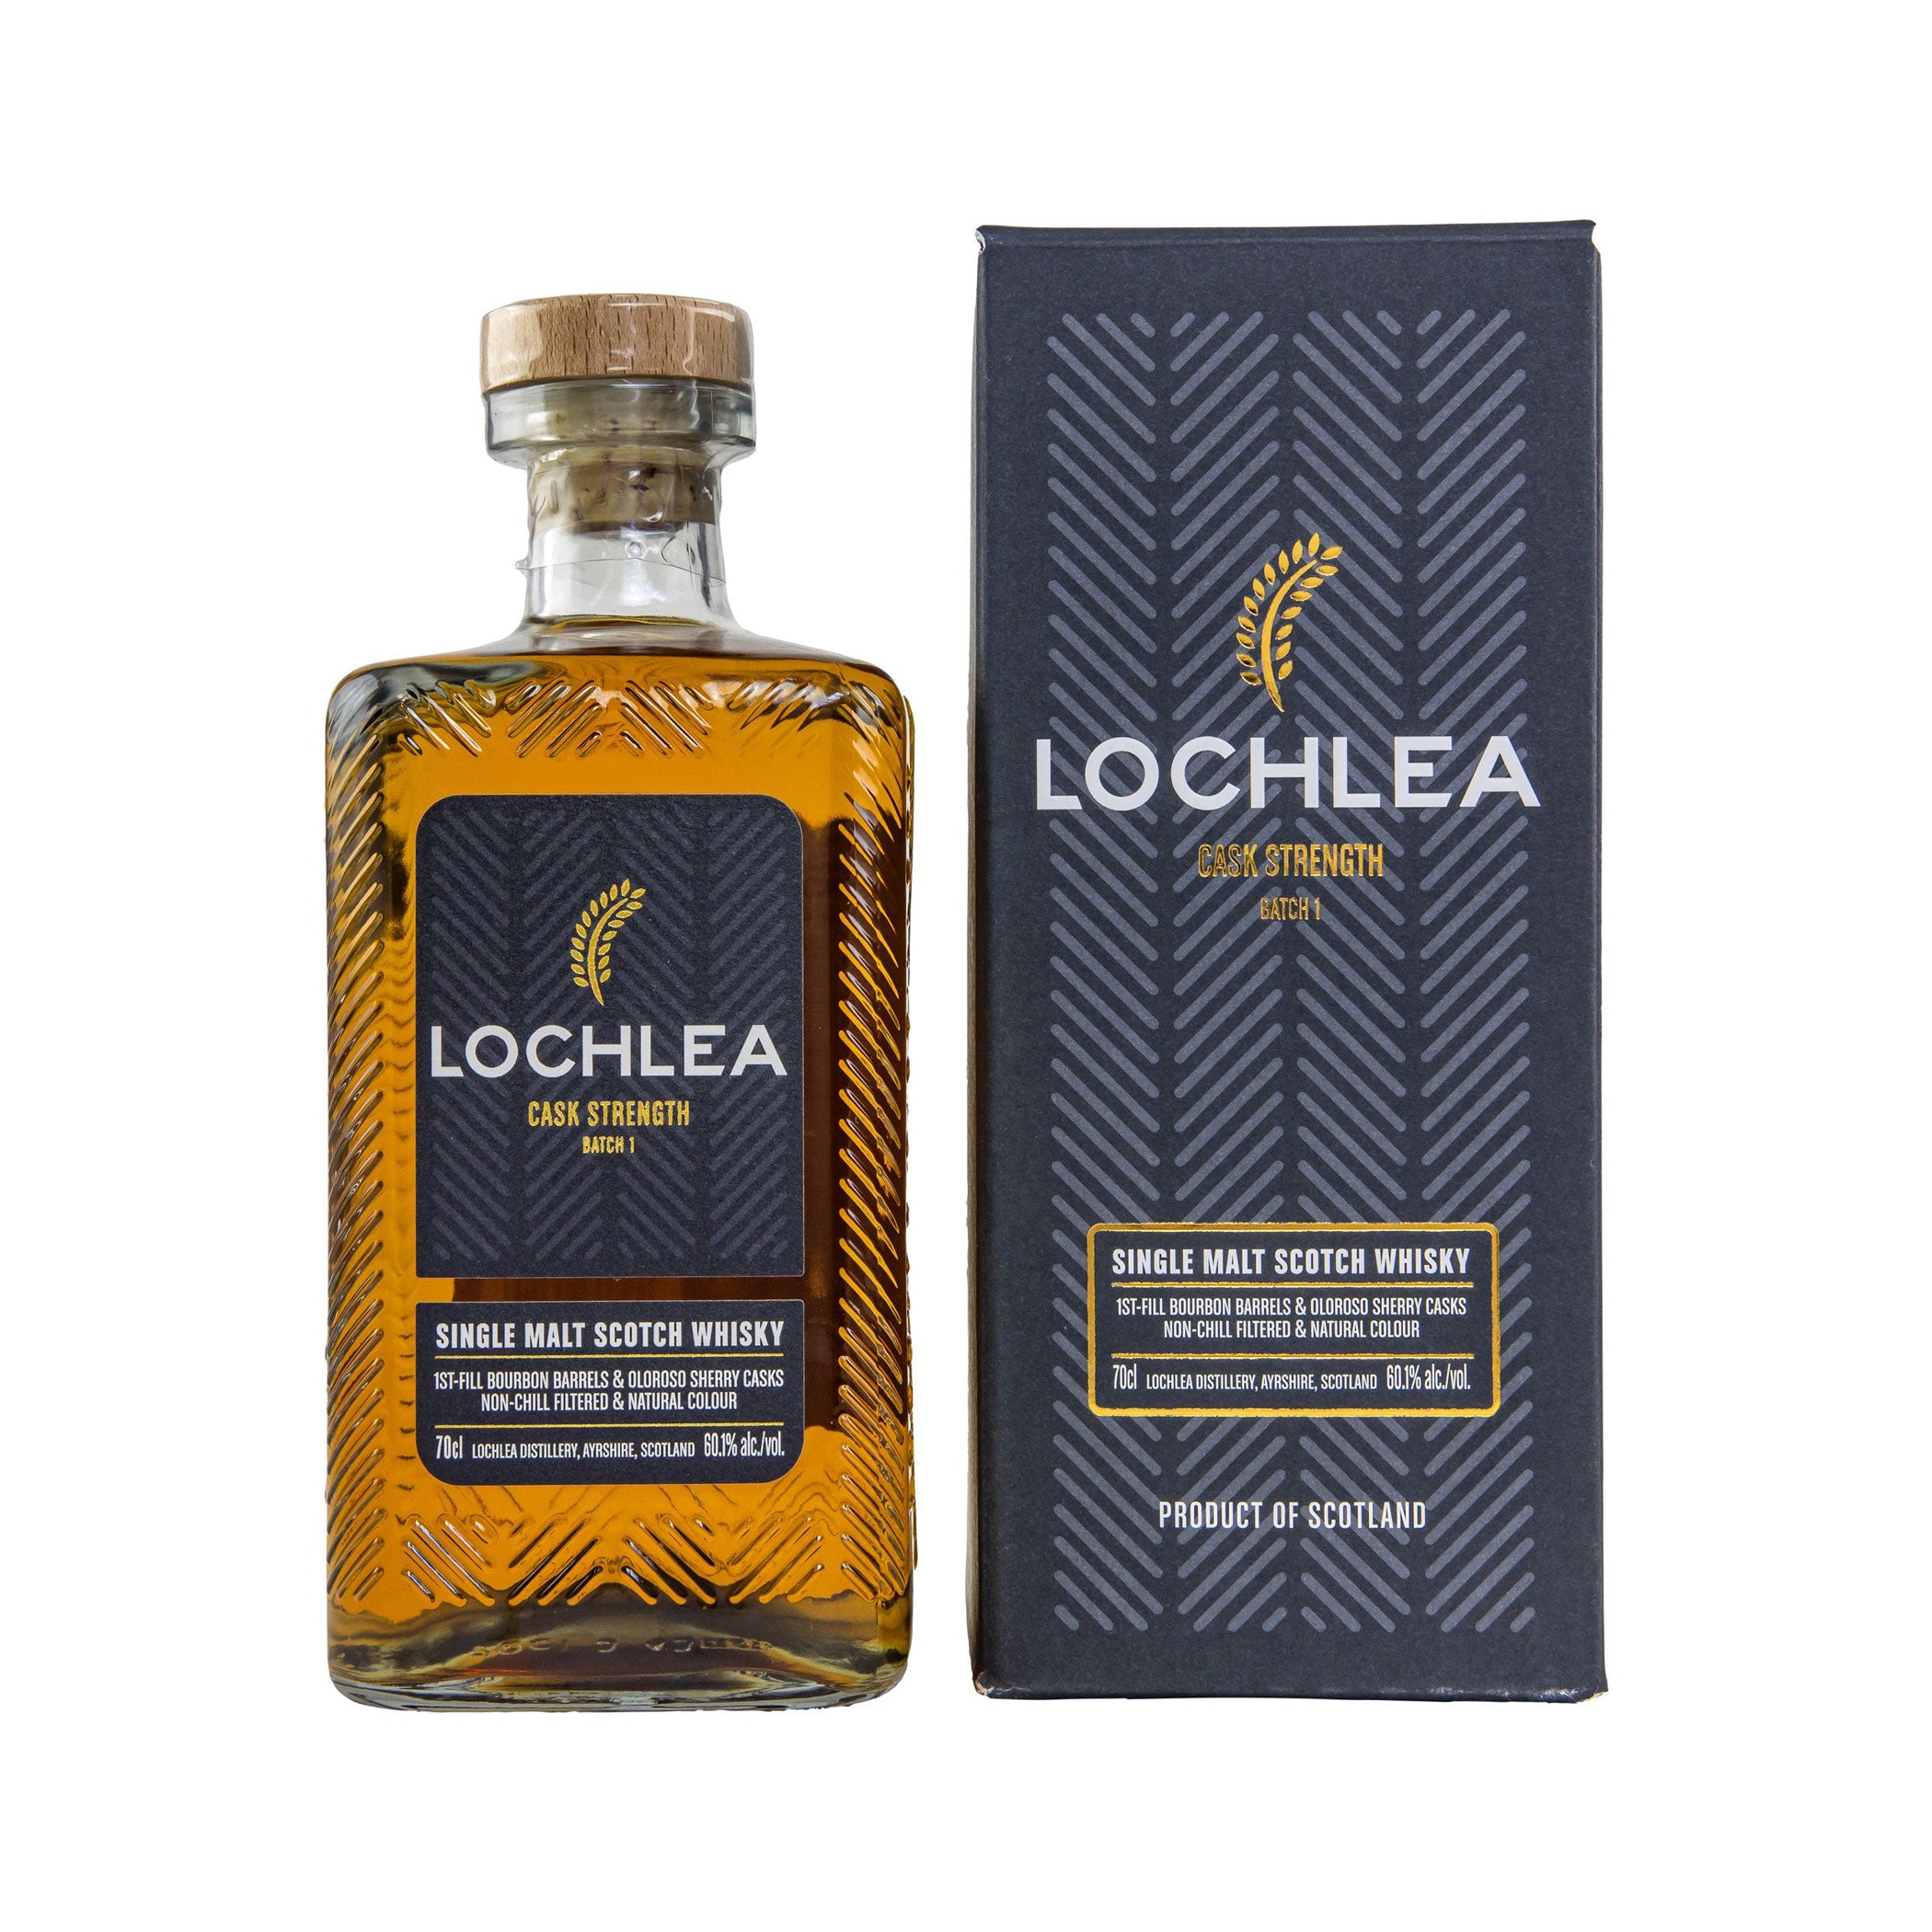 Lochlea Cask Strength Batch #1 - Single Malt Scotch Whisky